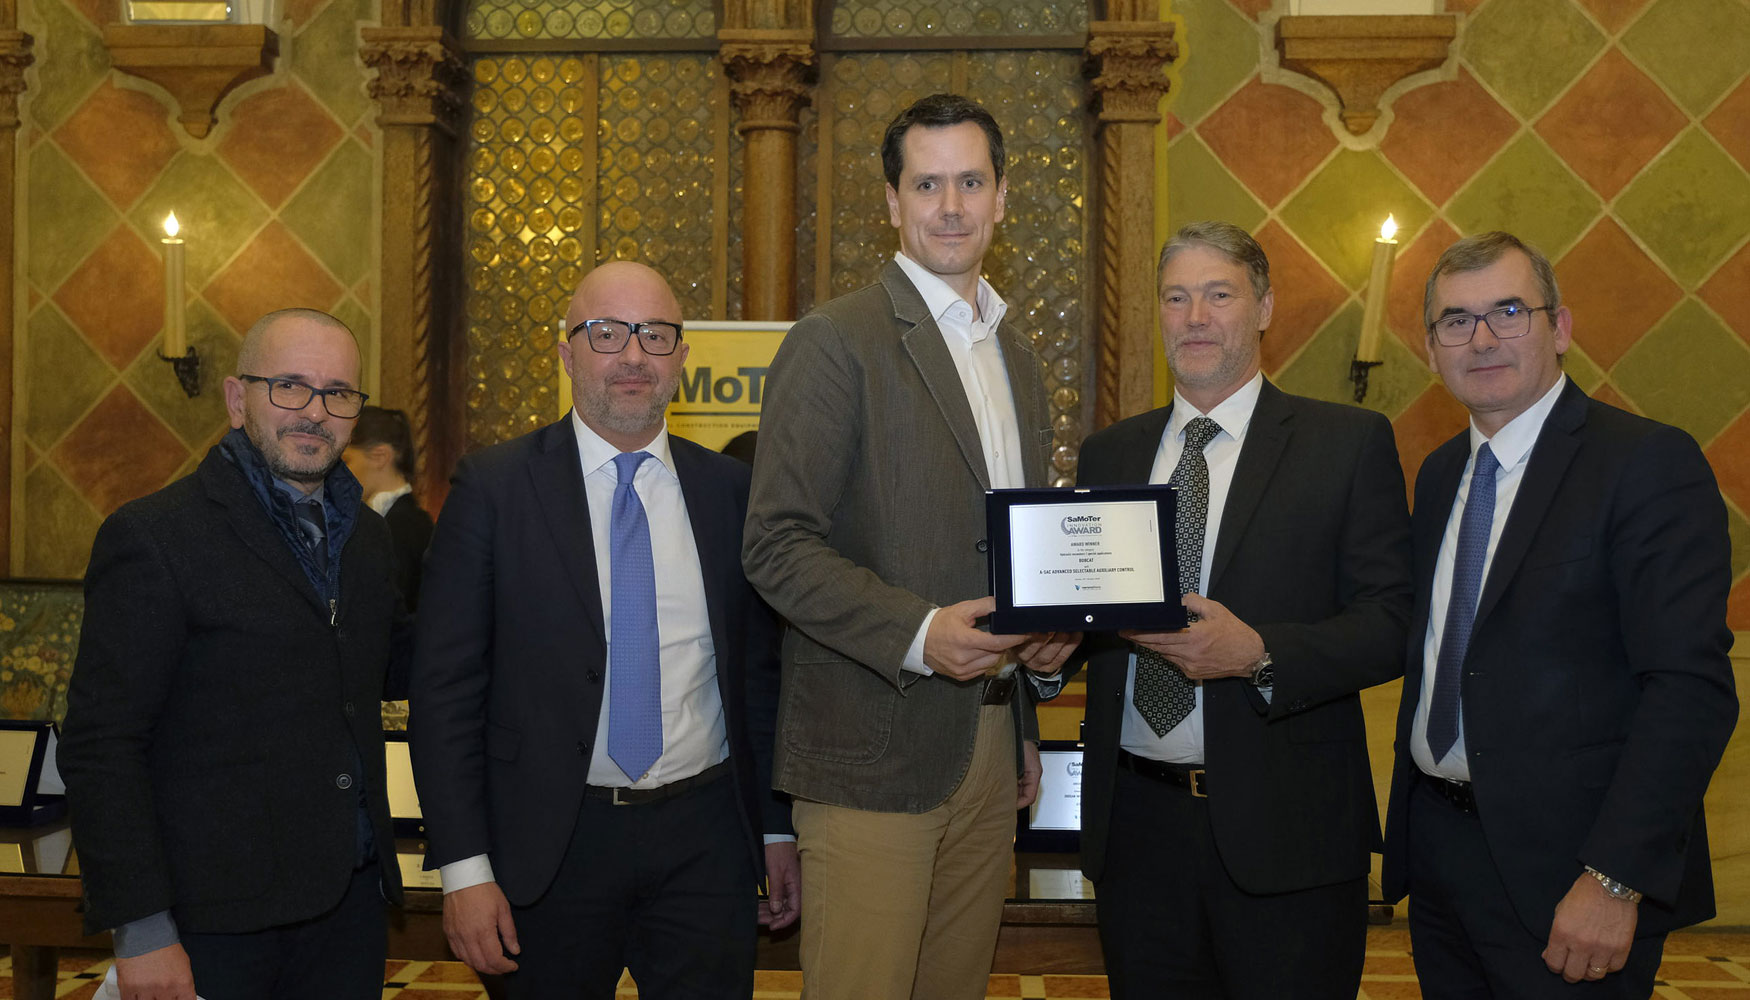 De Bobcat acudieron a recoger el Premio de Samoter Robert Husar, director de miniexcavadoras, y Luca Bonadiman, director de rea para Italia, Israel...